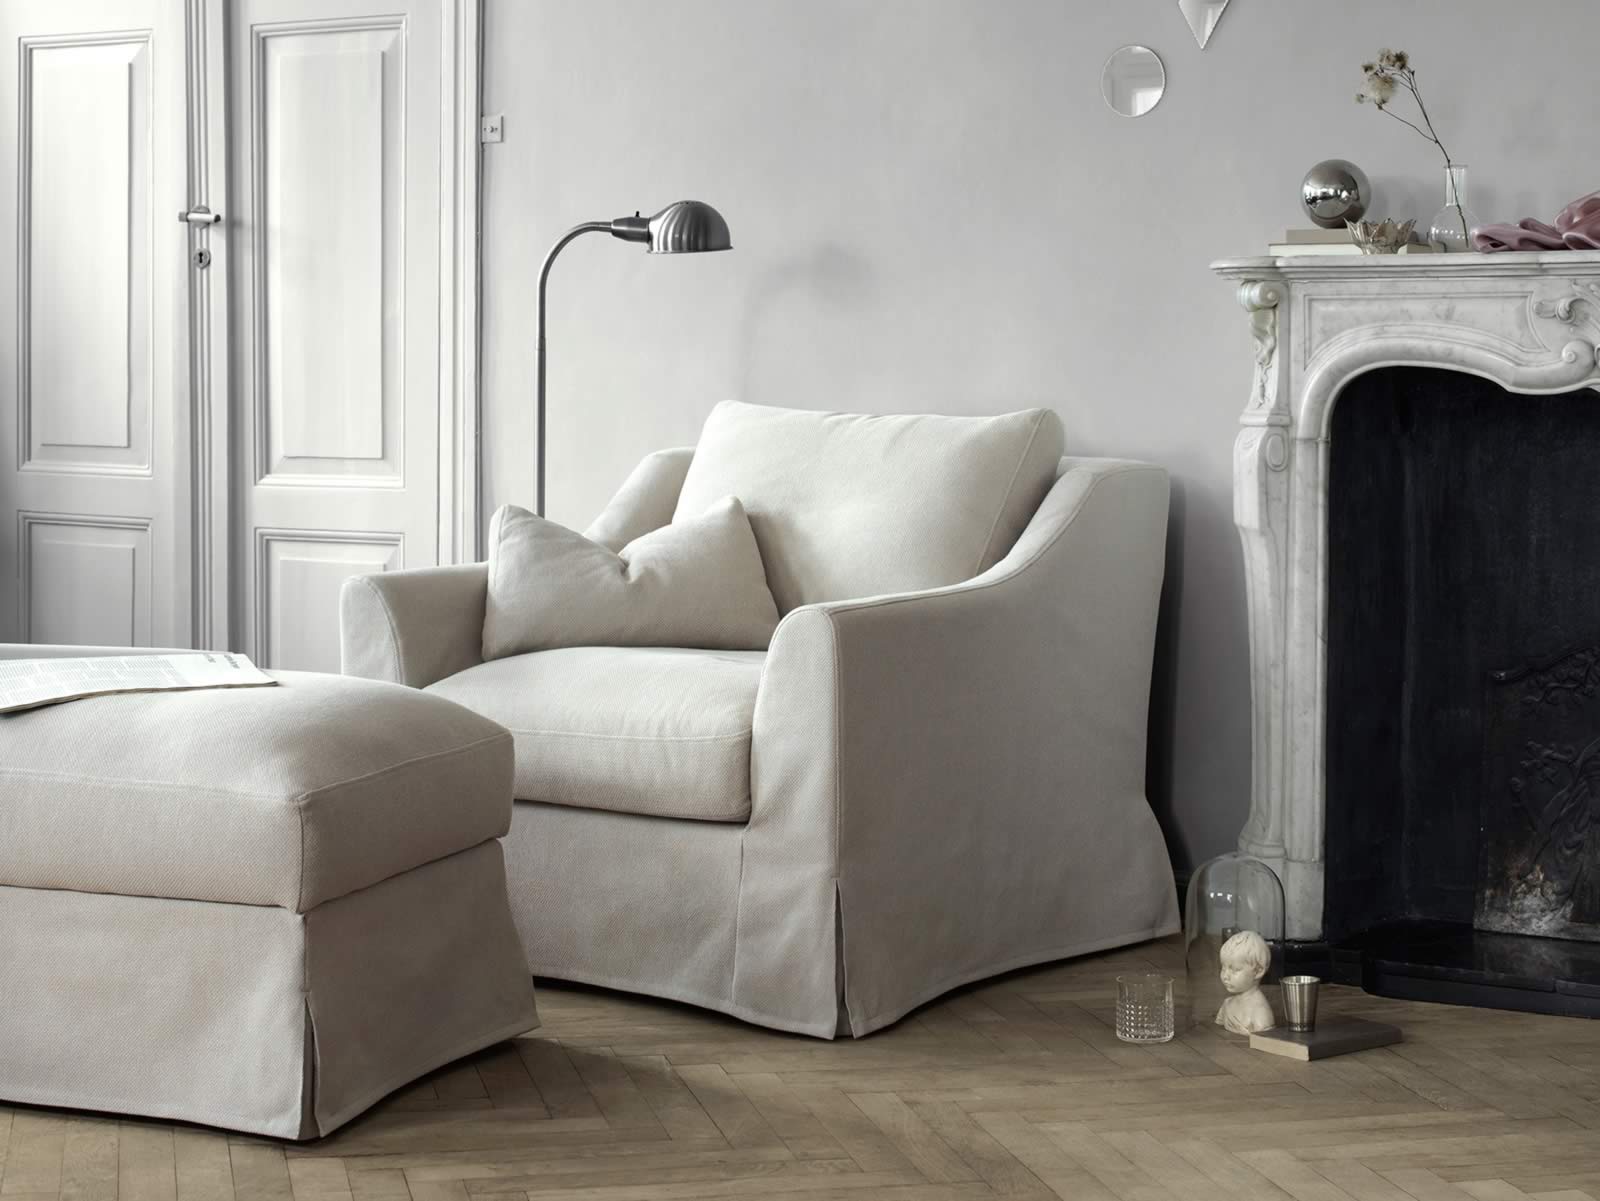 apetito Docenas apertura Probamos los nuevos sofás Farlov de IKEA - Opinión | Blog Comfort Works -  Inspiración y decoración